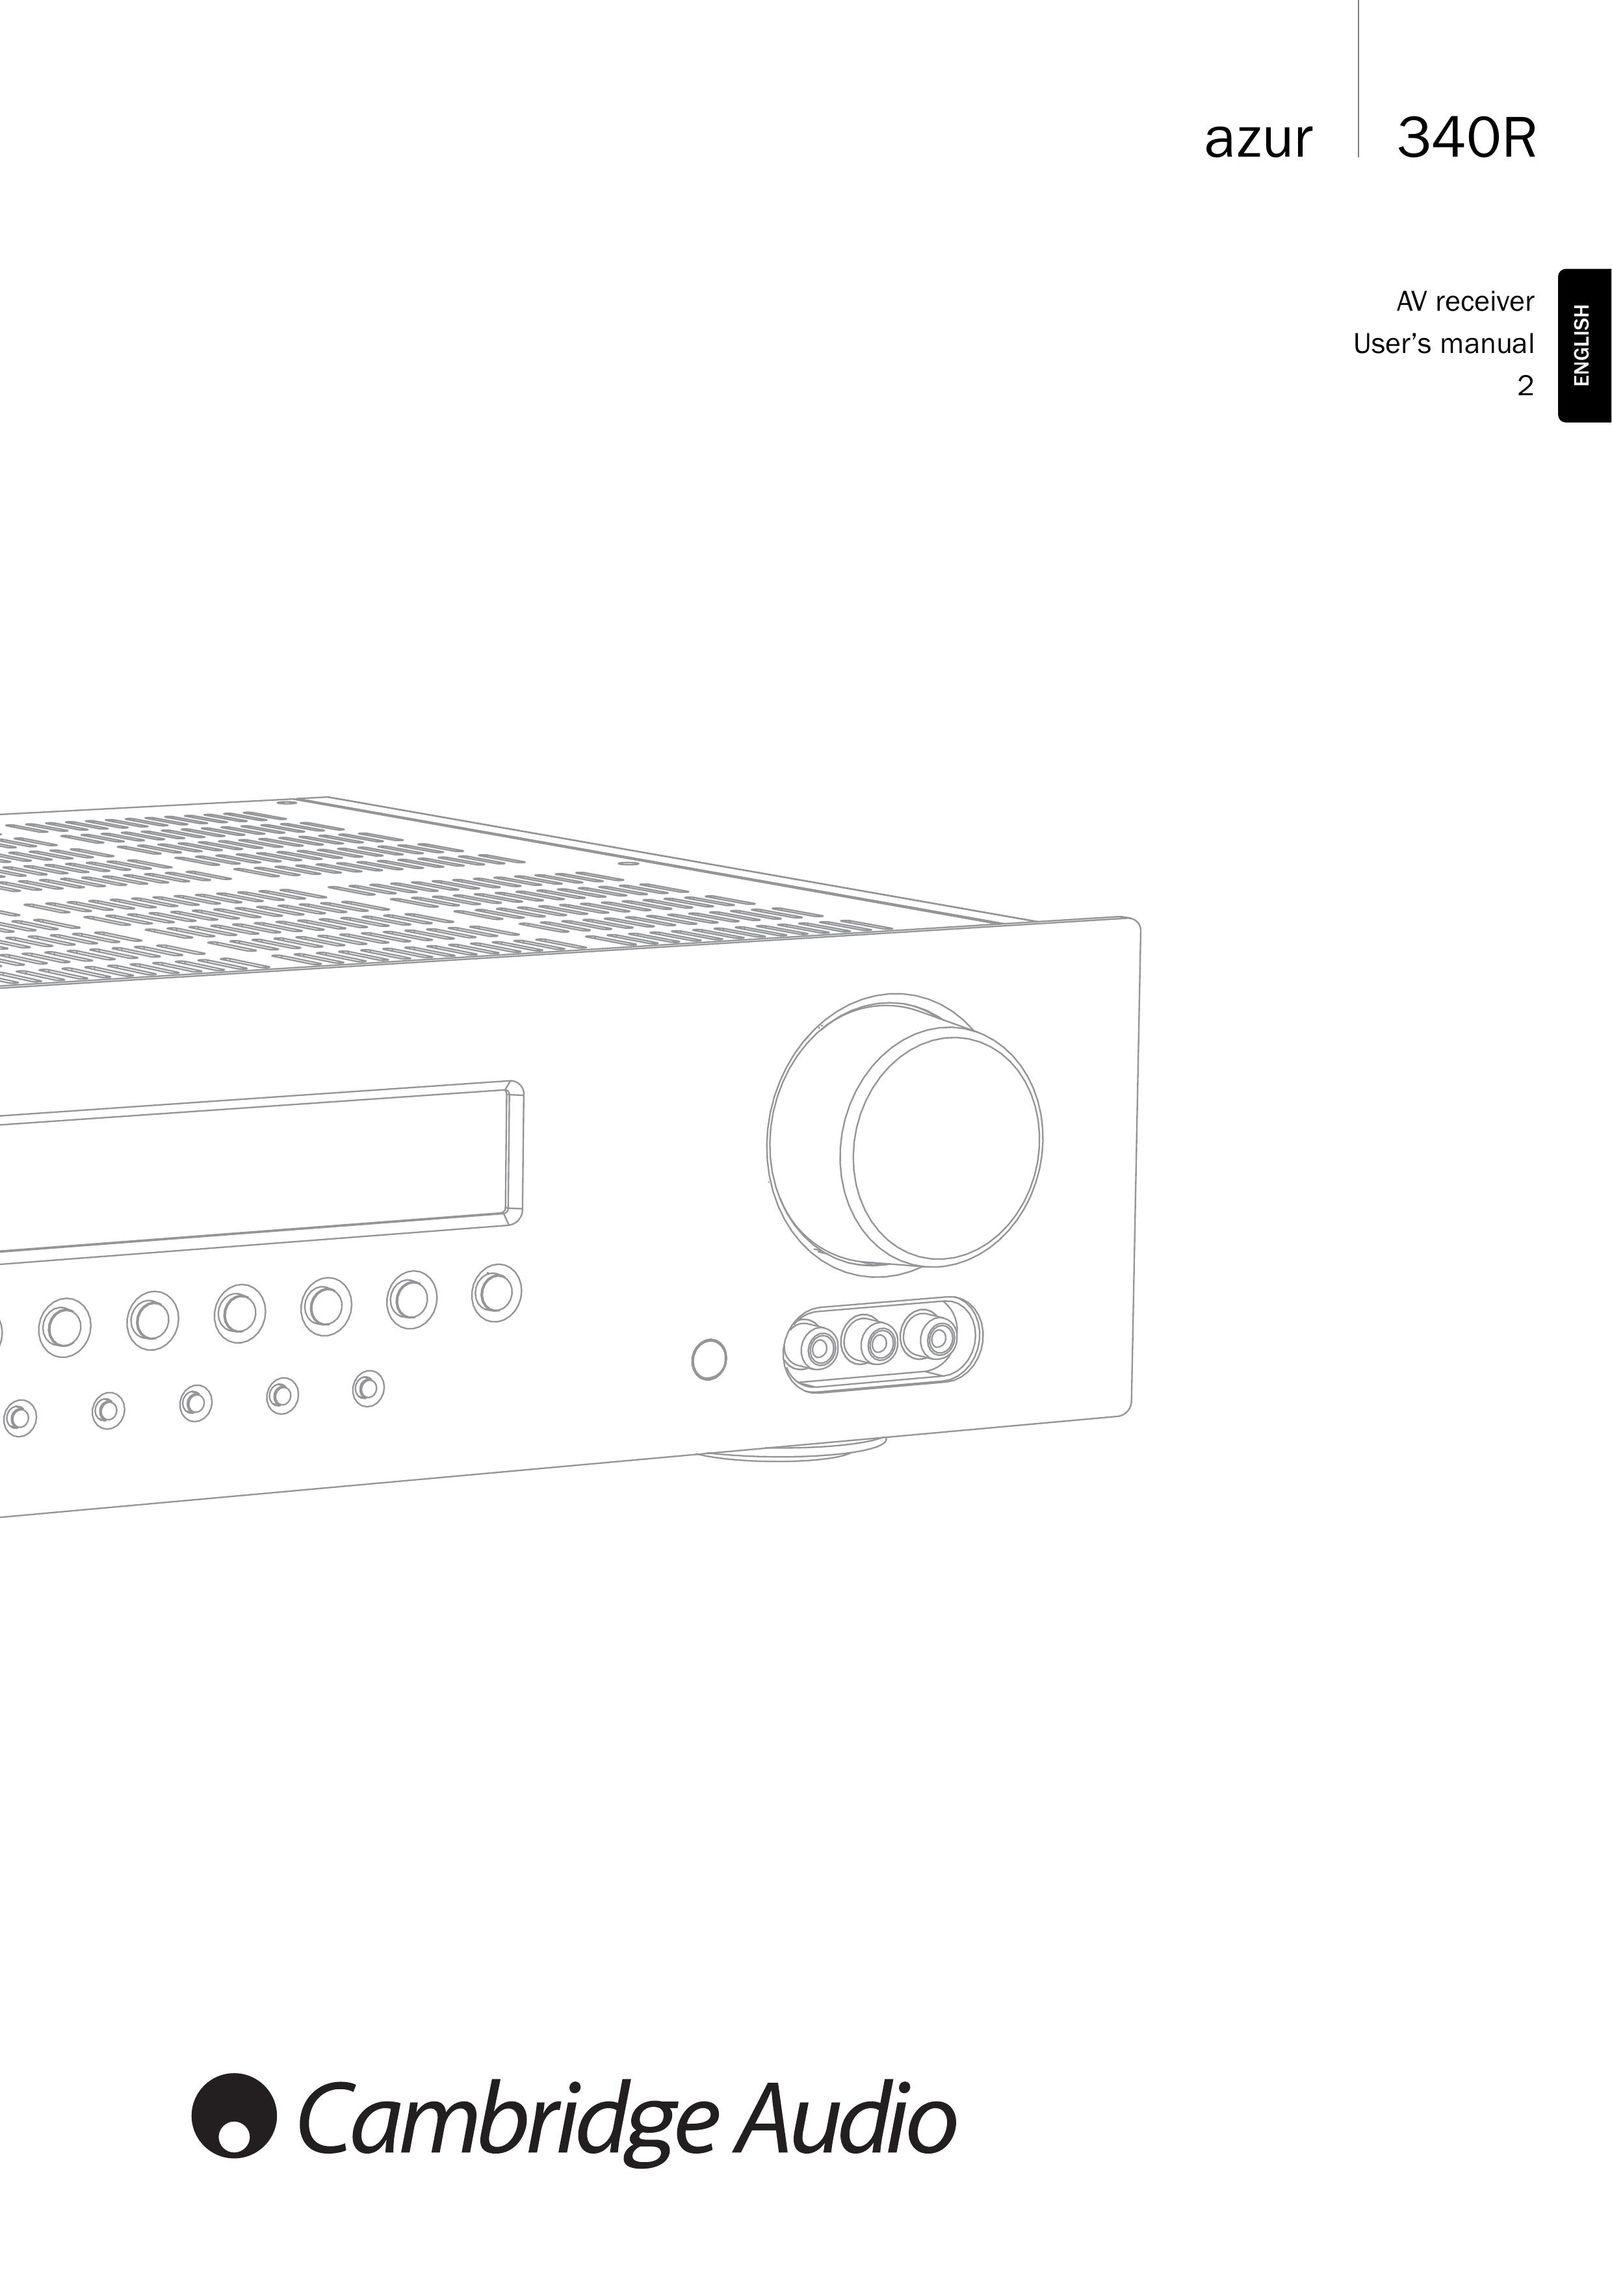 Cambridge Audio 340Razur Speaker User Manual